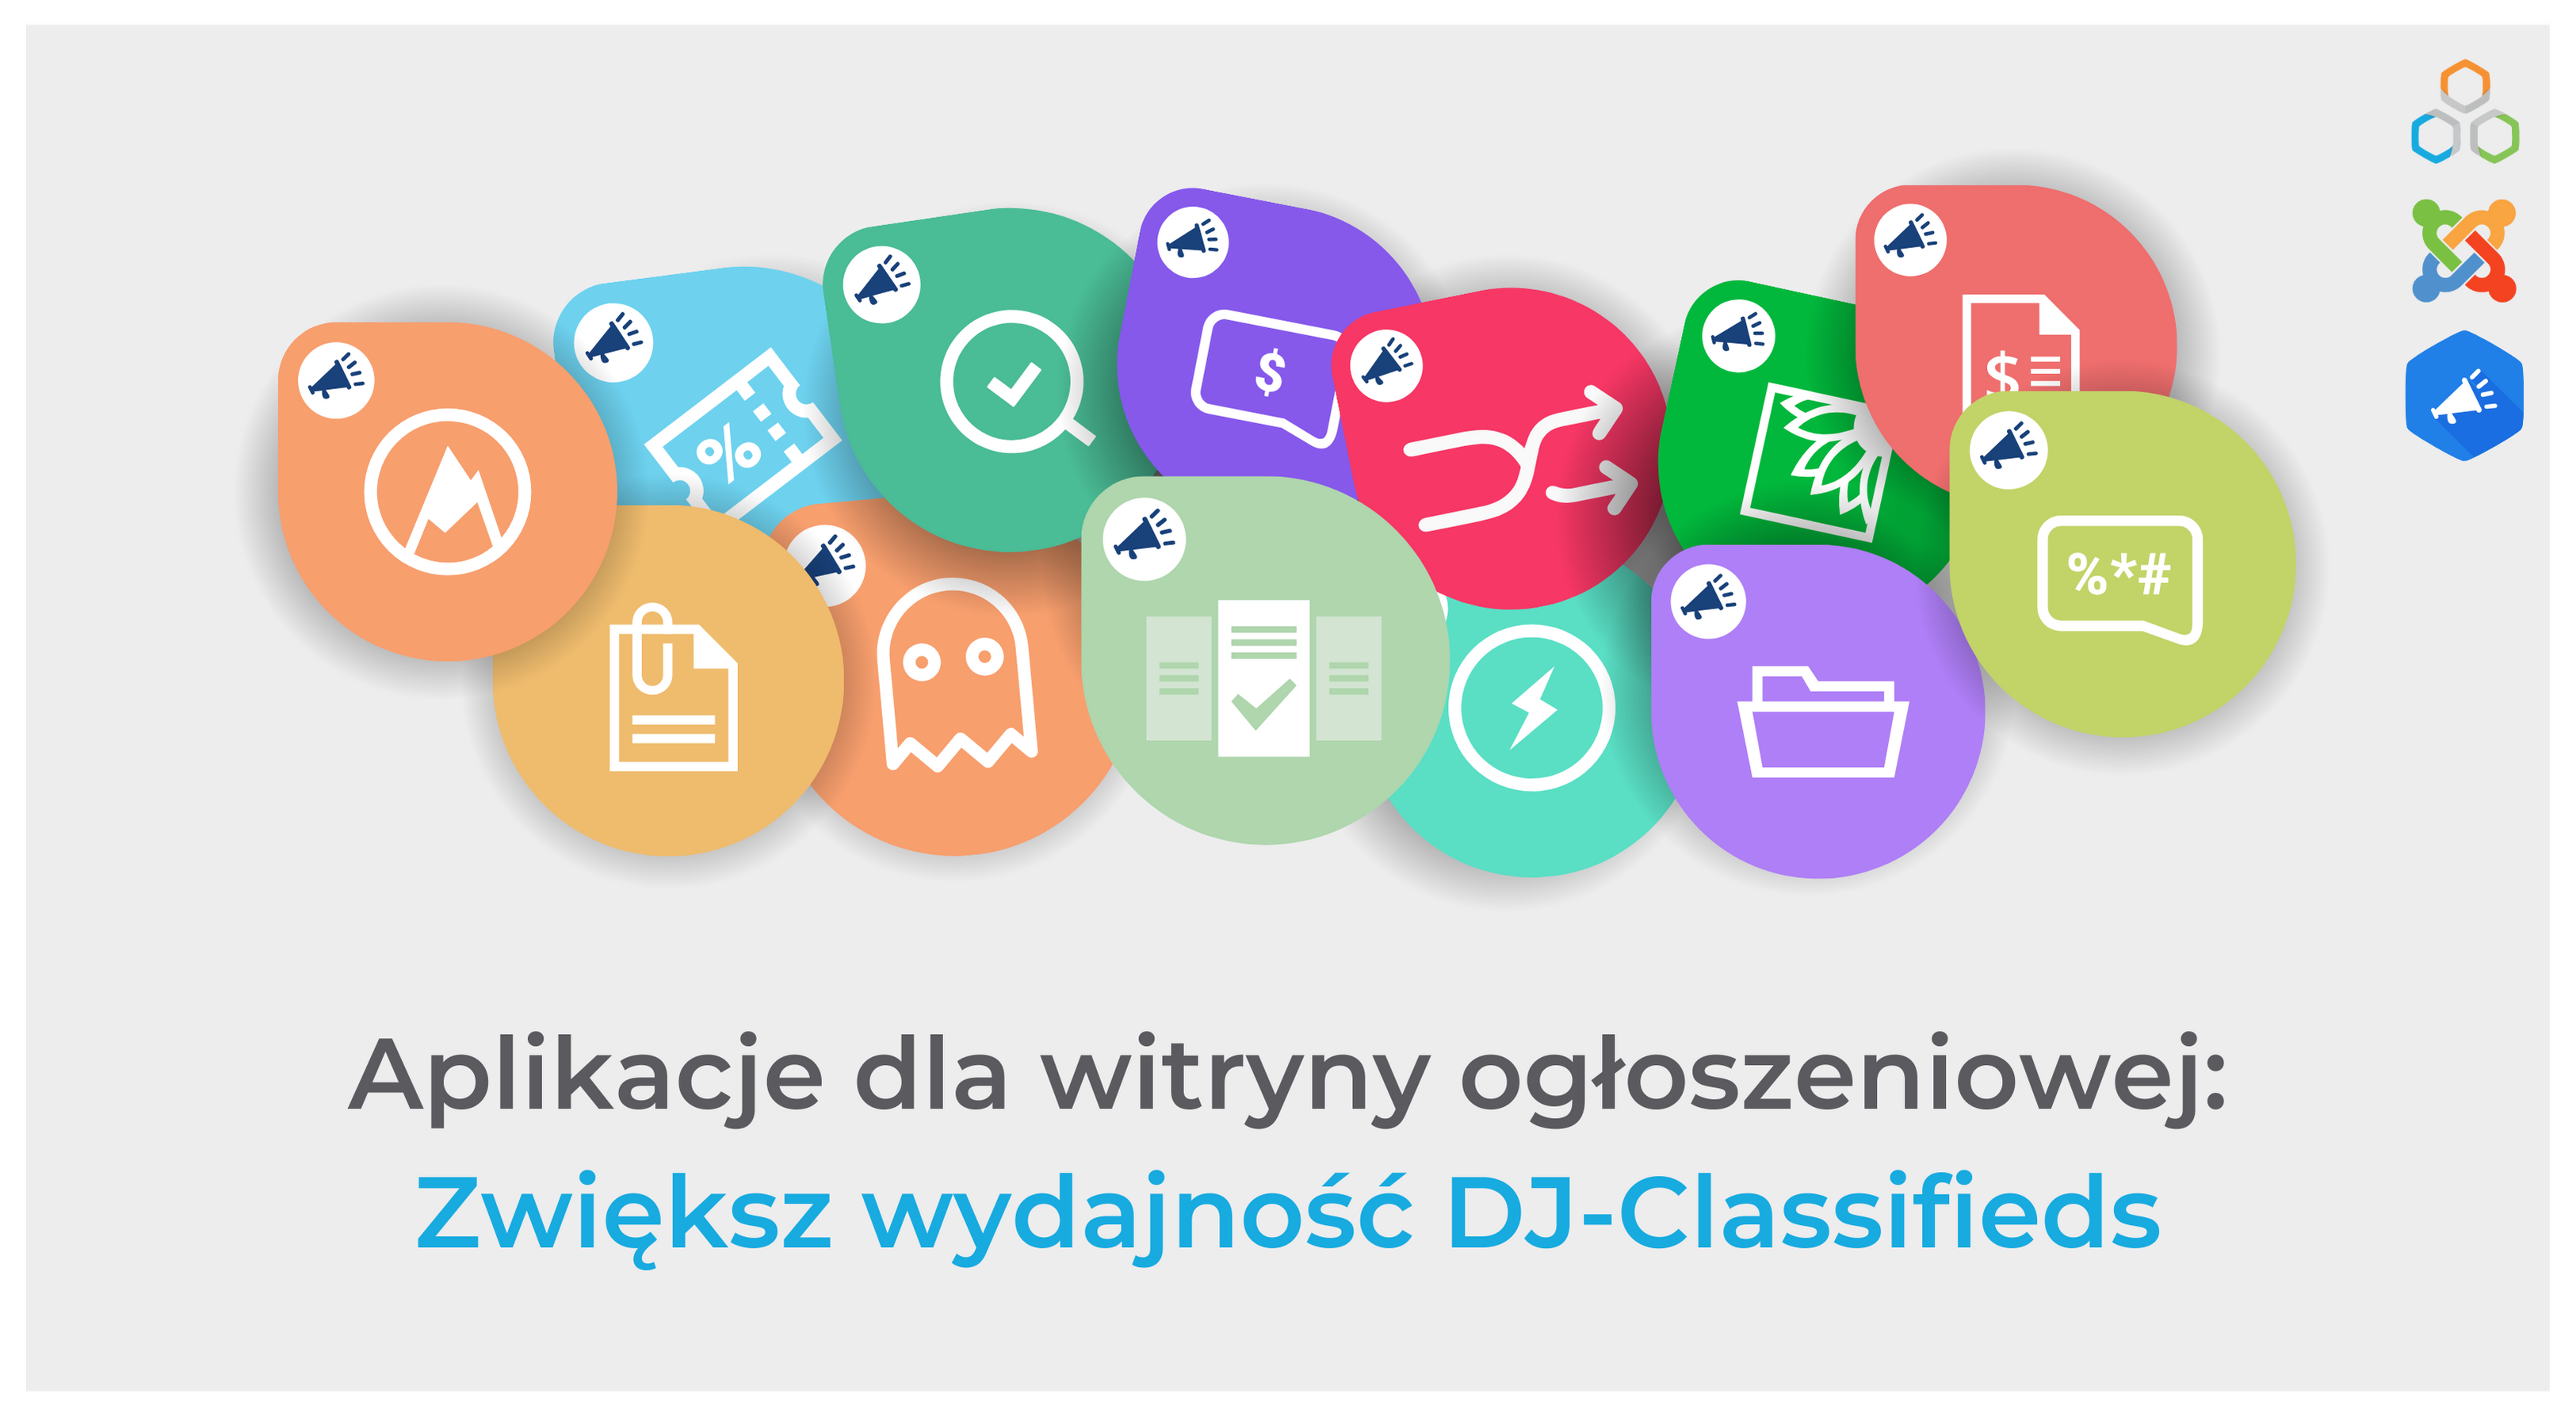 Zwiększ wydajność DJ-Classifieds dzięki aplikacjom dla witryny z ogłoszeniami